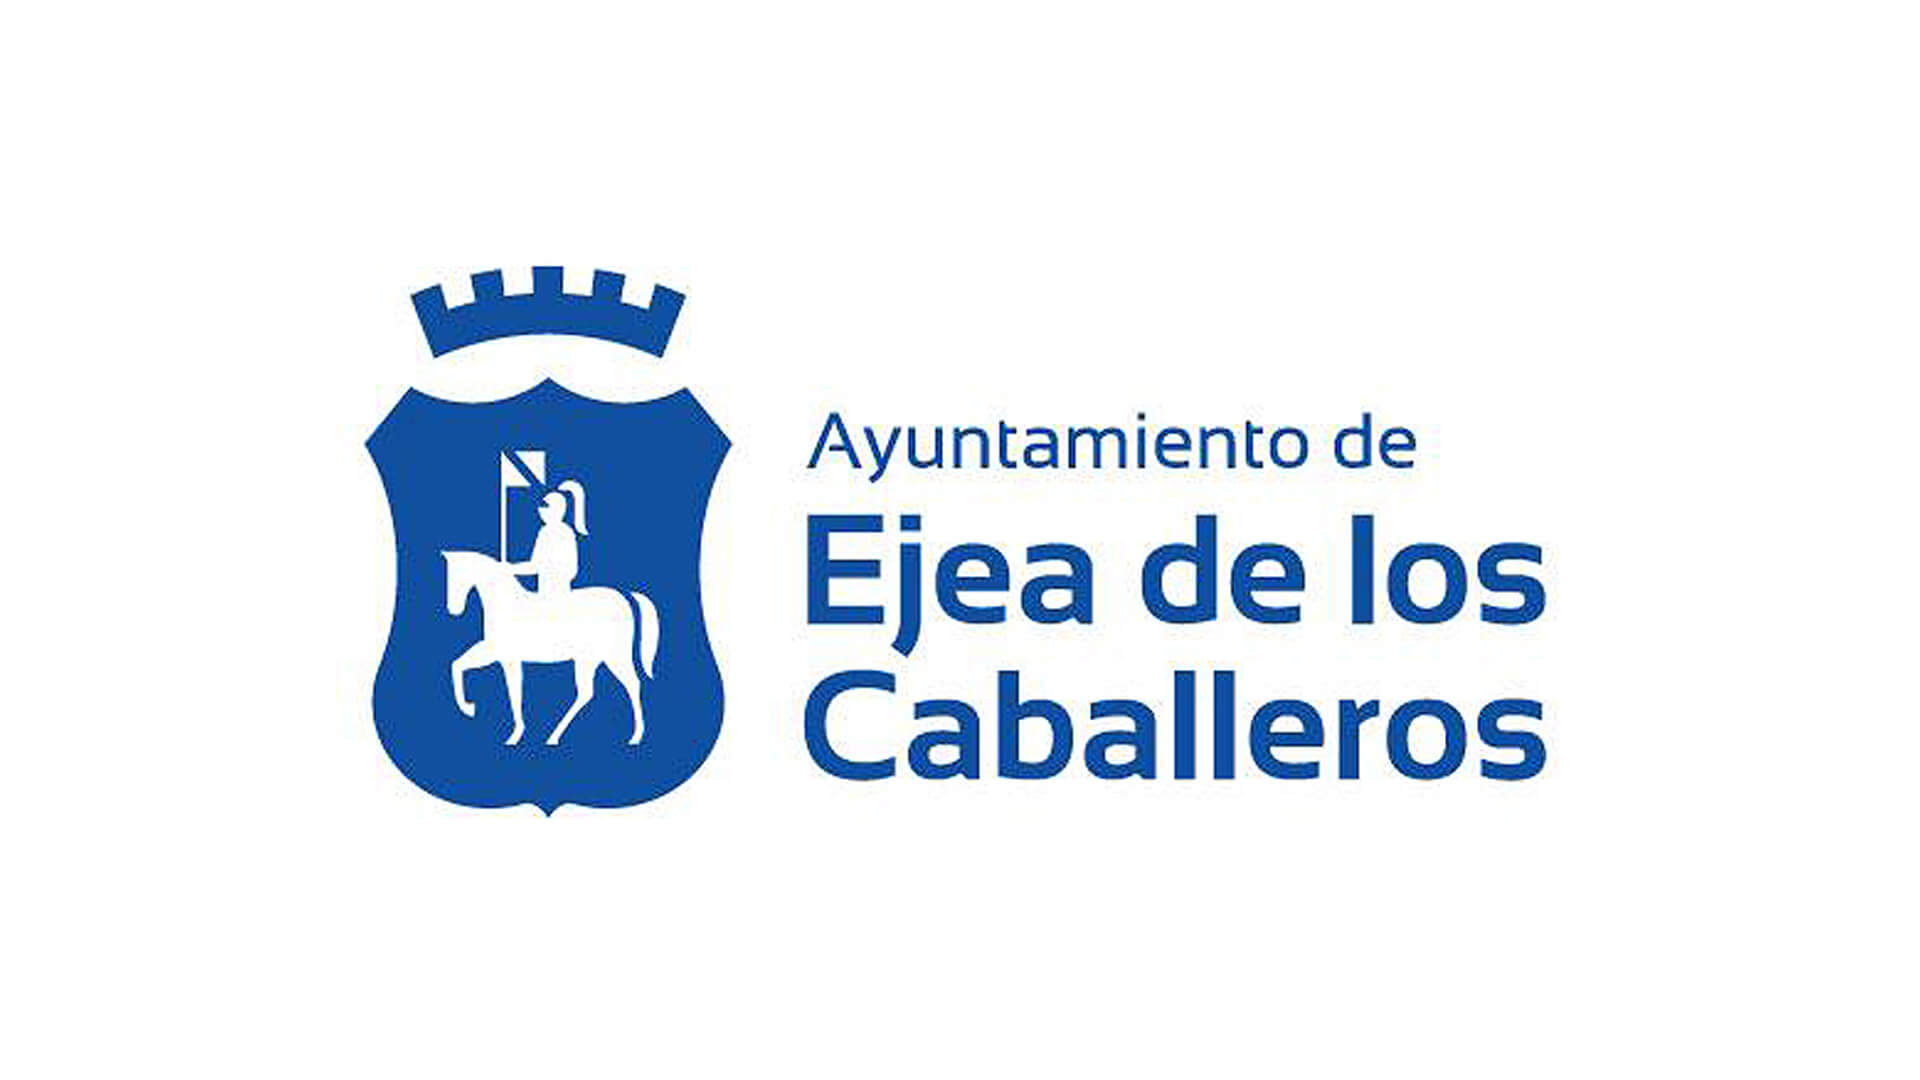 Ayuntamiento de Ejea de los Caballeros - Clientes de ESMAS Gestión Deportiva